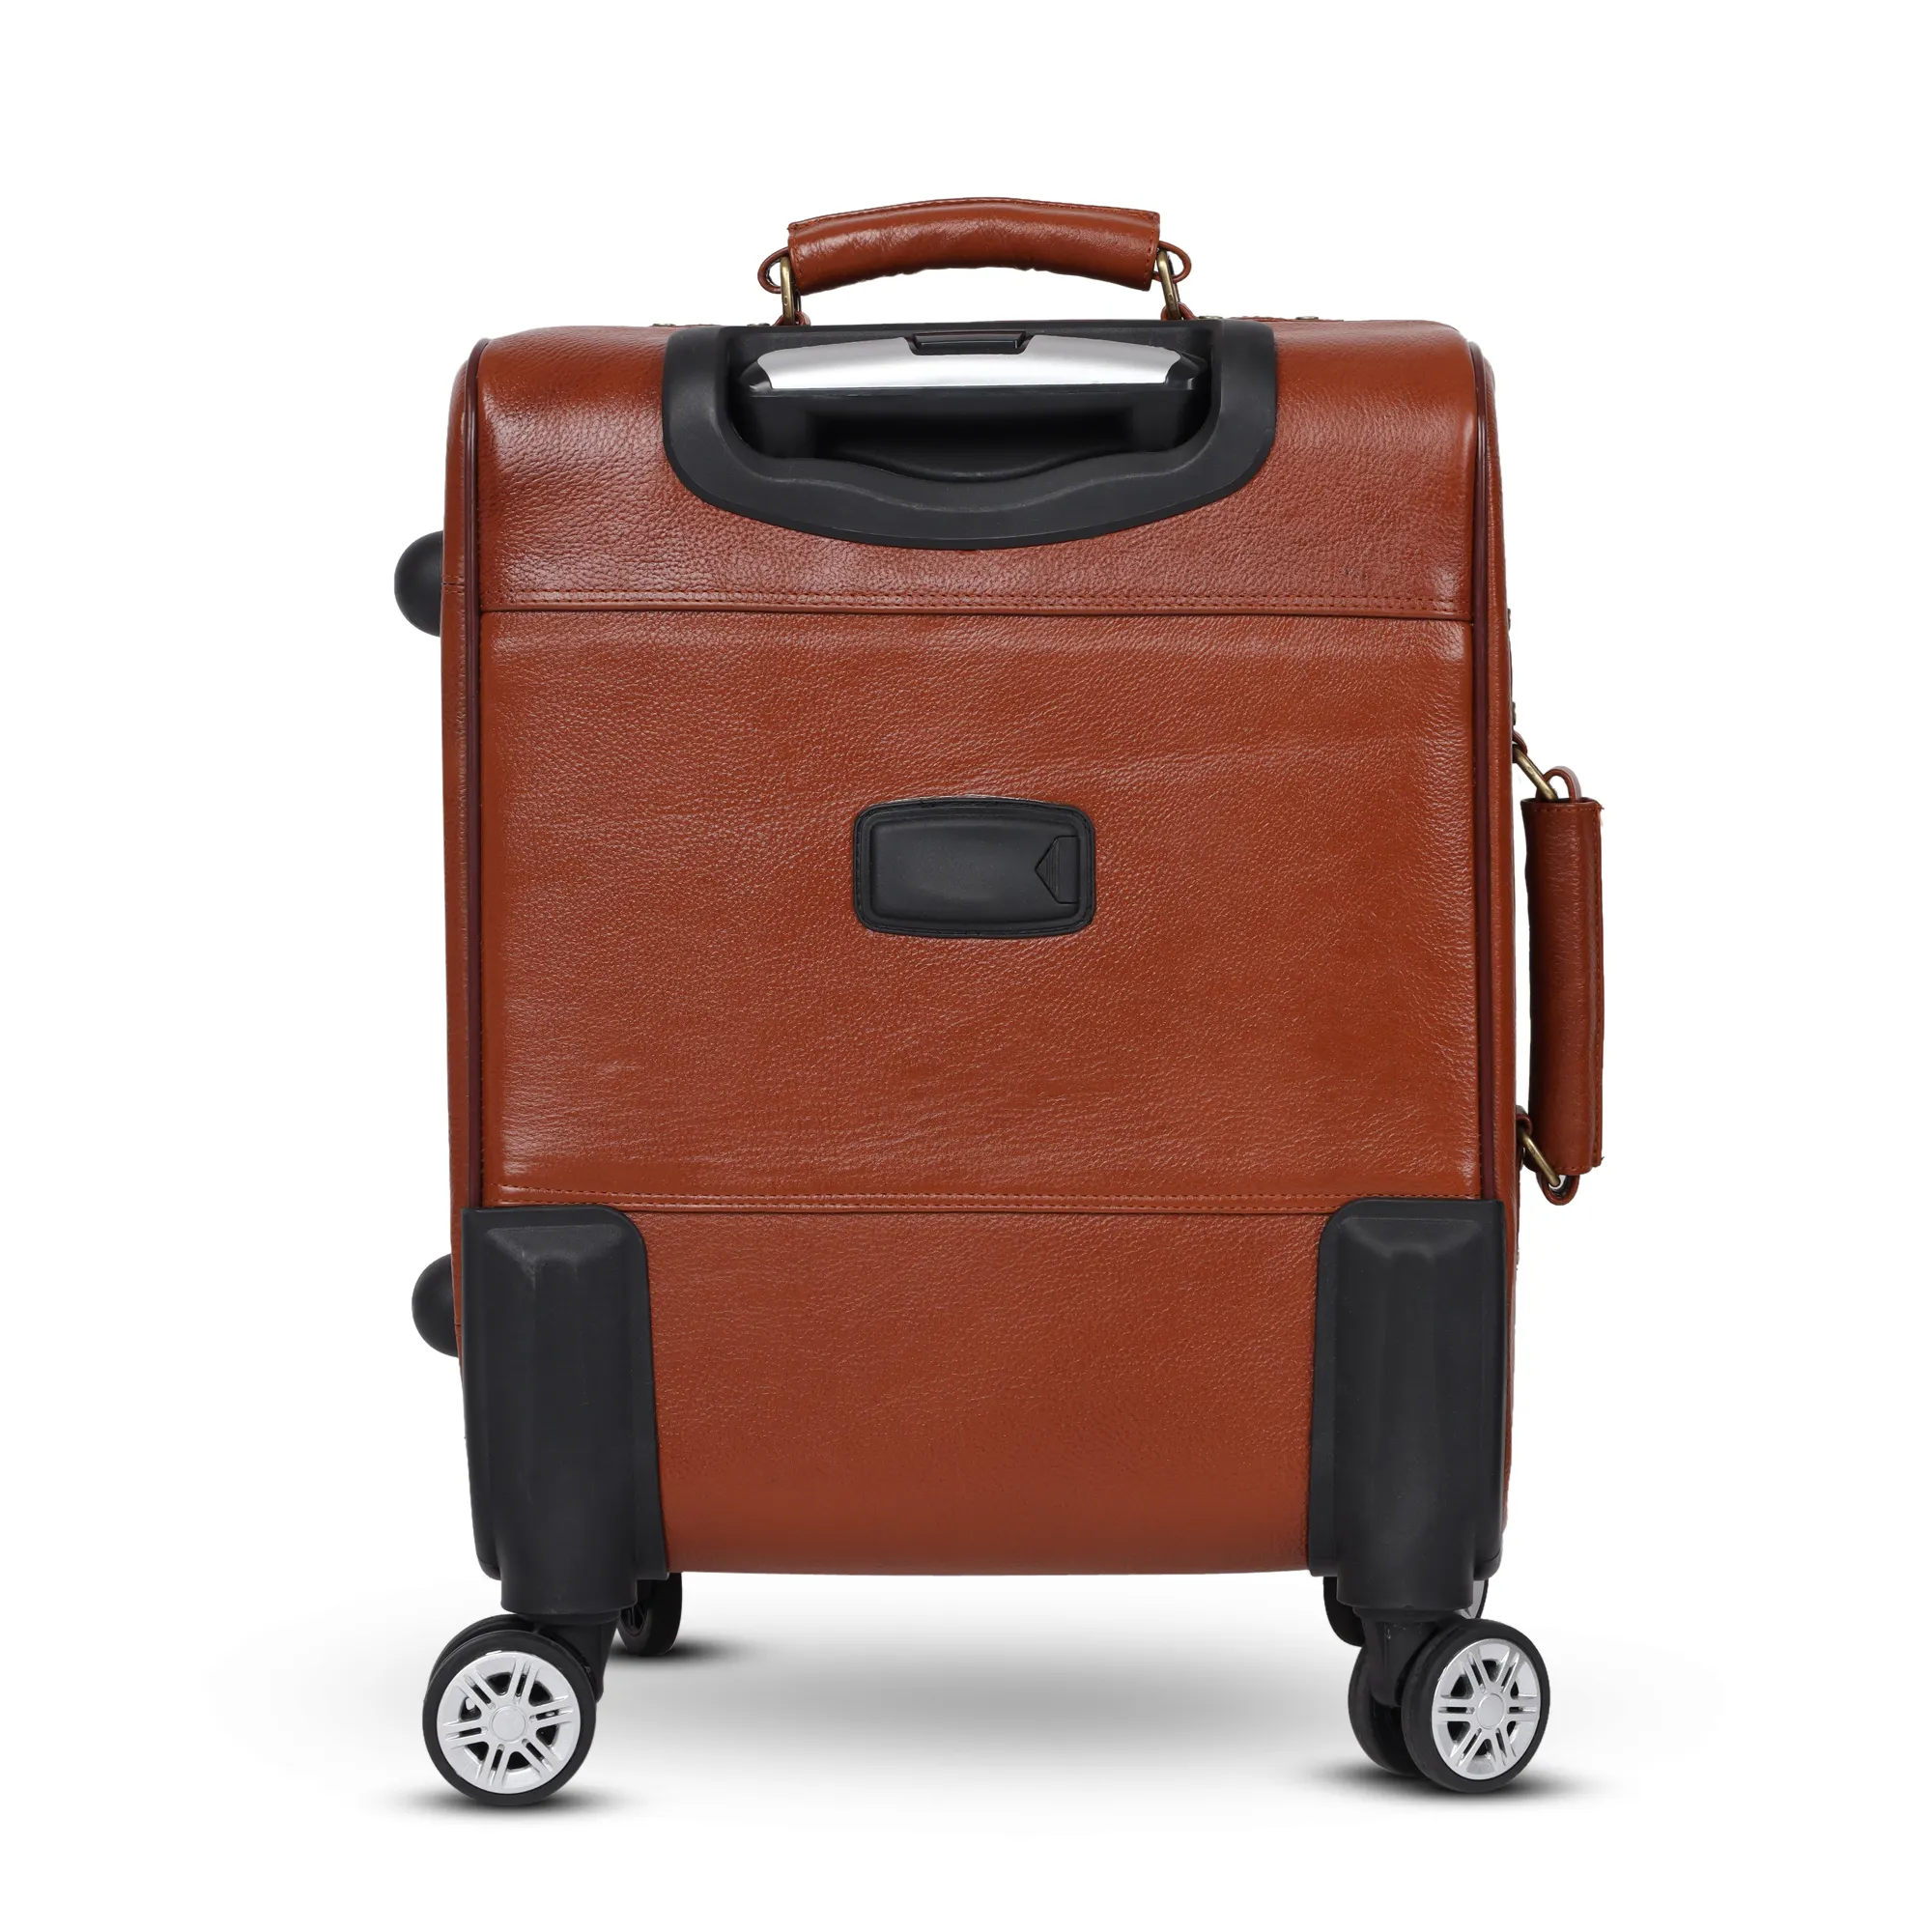 OEM valigia Premium di alta qualità 100% in vera pelle Trolley valigie da viaggio borsa Trolley materiale di lunga durata